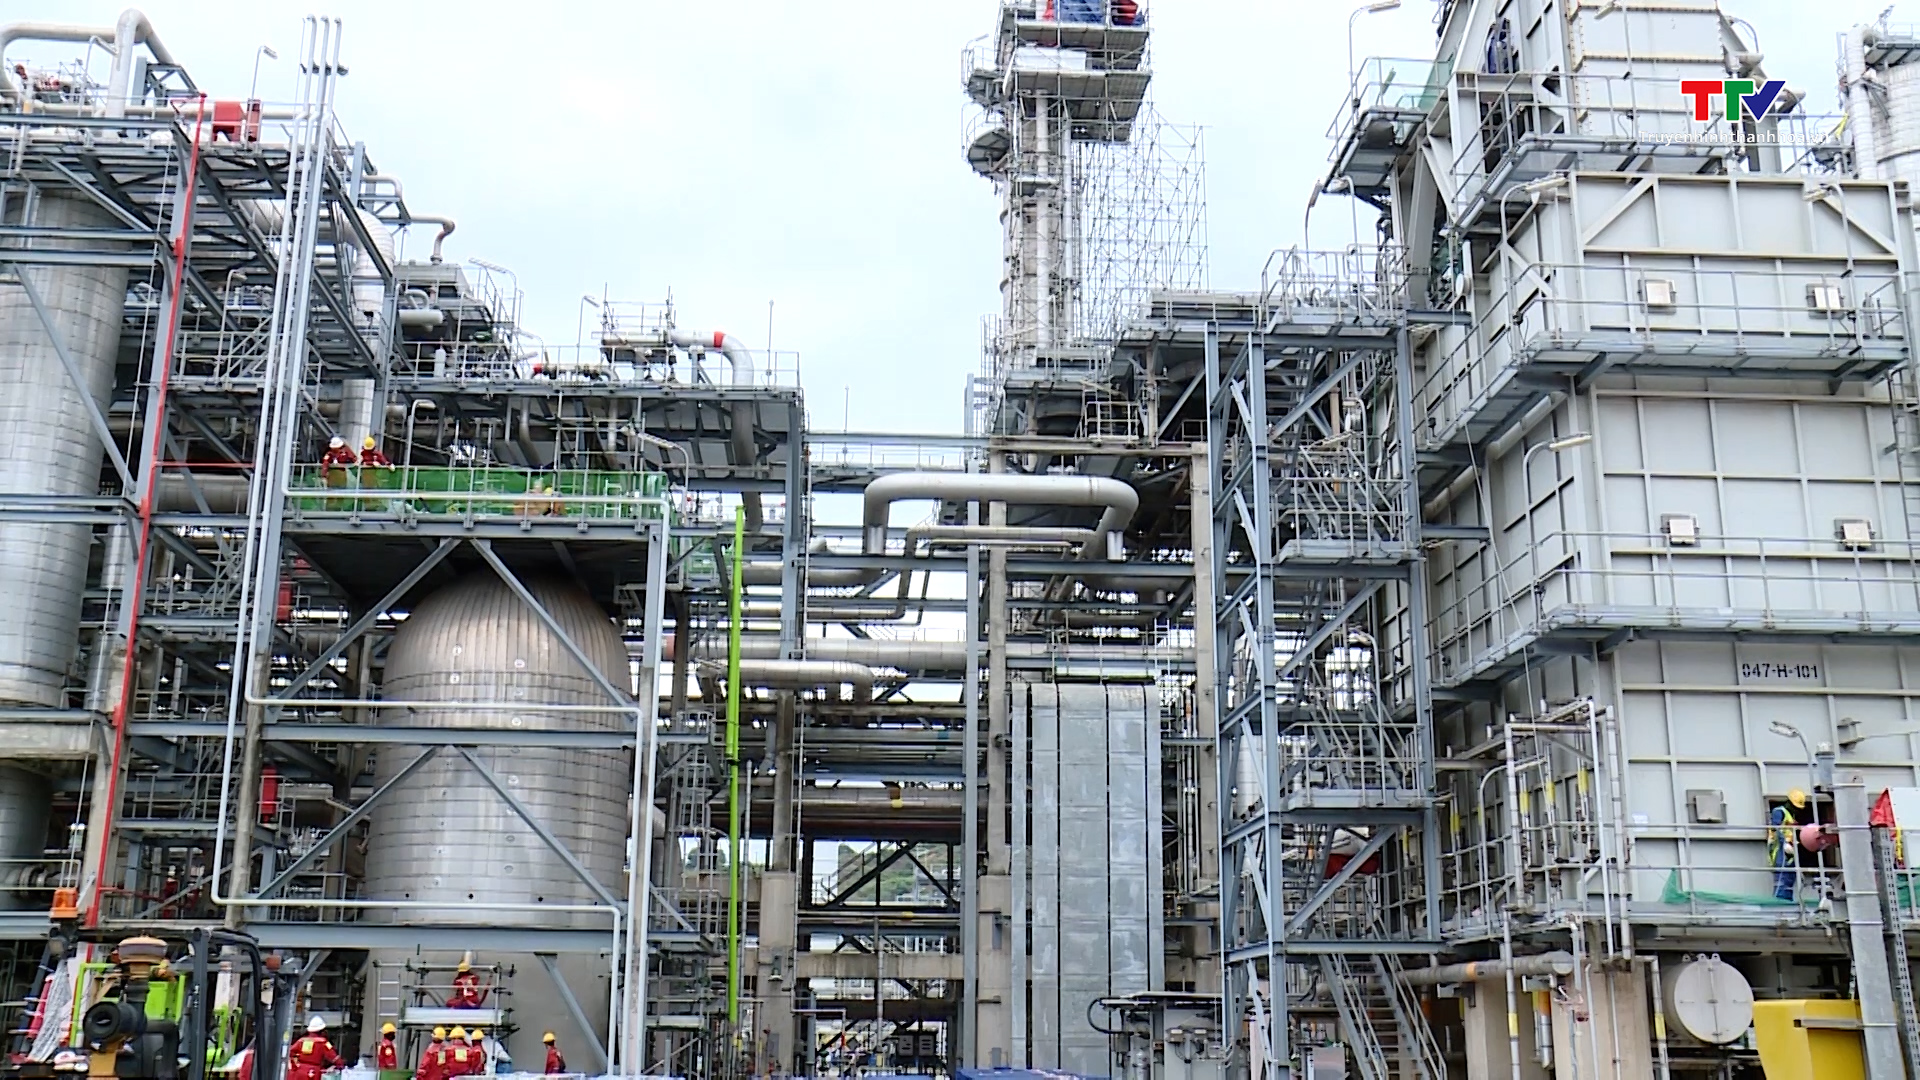 Tuân thủ nghiêm ngặt quy định về bảo vệ môi trường trong bảo dưỡng Nhà máy lọc hóa dầu Nghi Sơn - Ảnh 2.